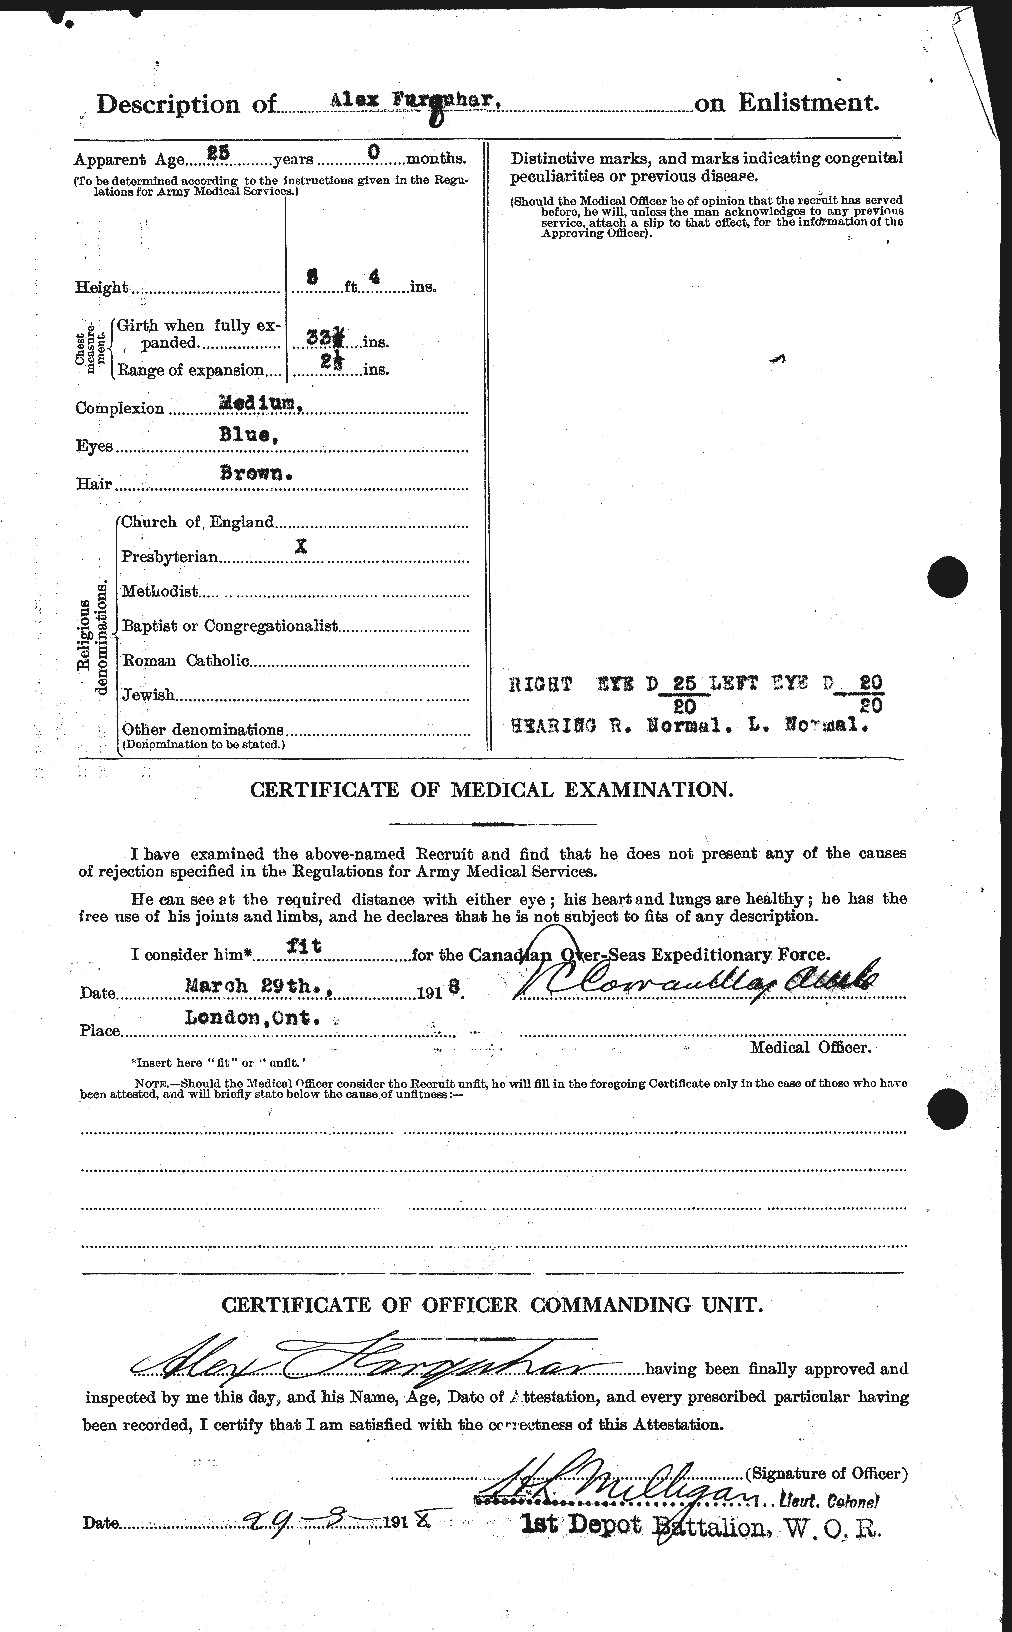 Dossiers du Personnel de la Première Guerre mondiale - CEC 318757b